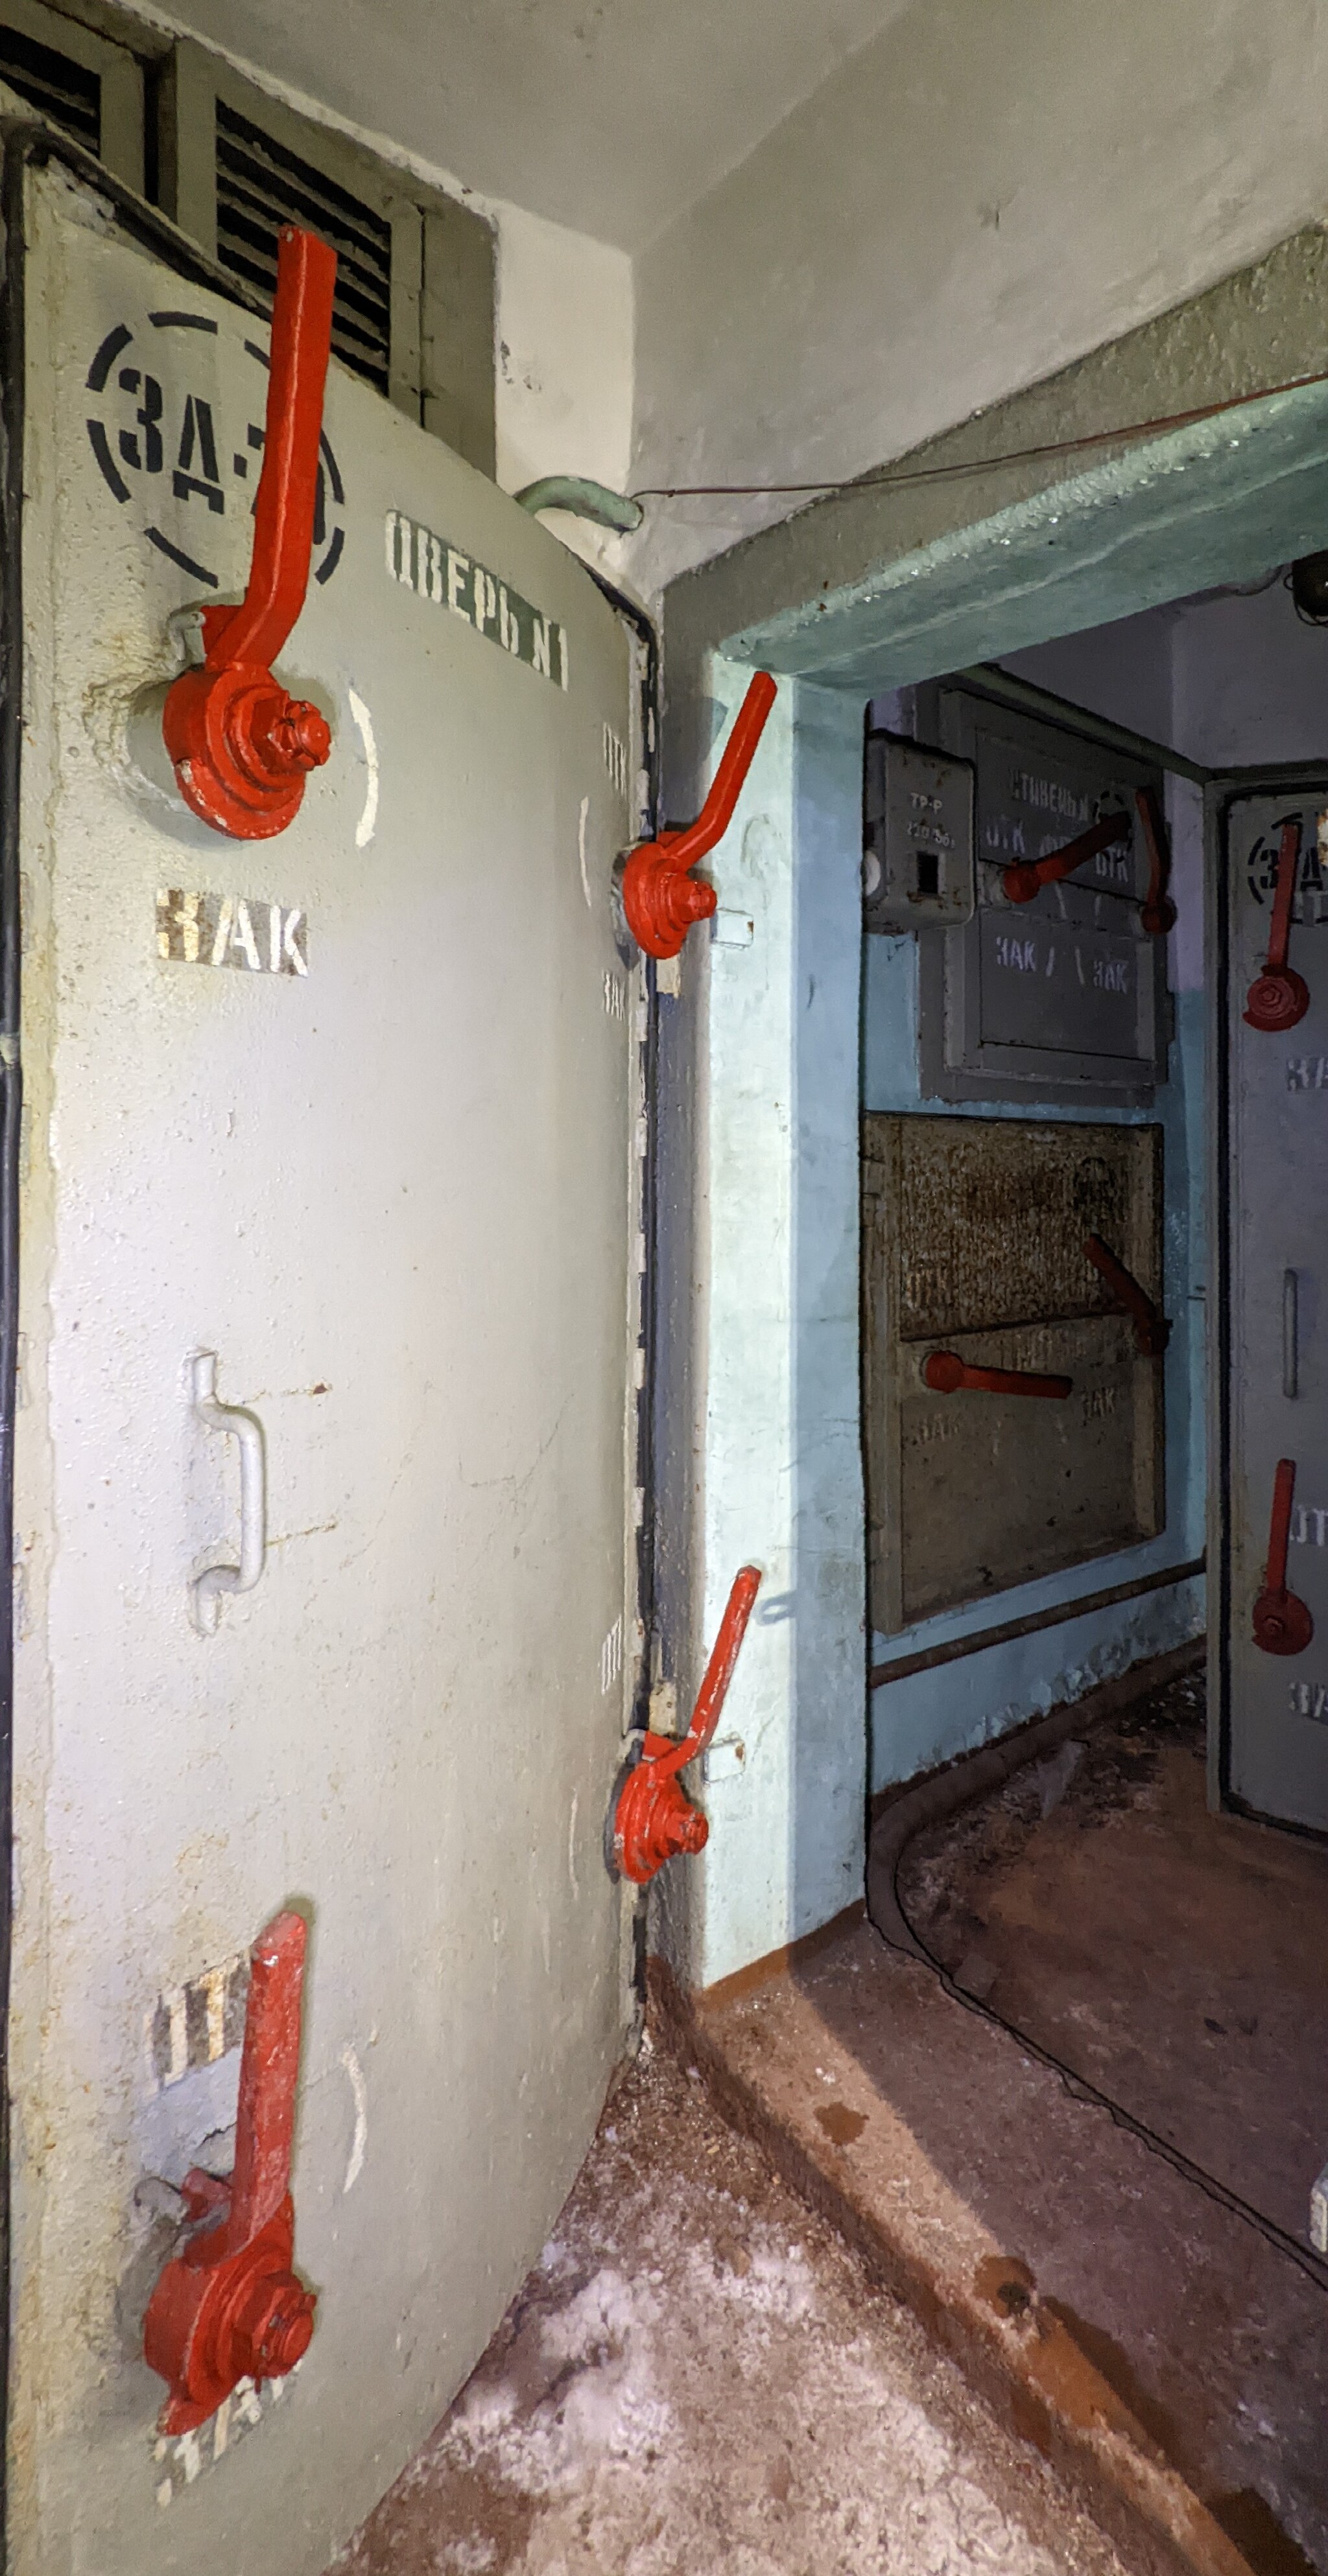 Soviet bunker - My, Bomb shelter, Abandoned, Longpost